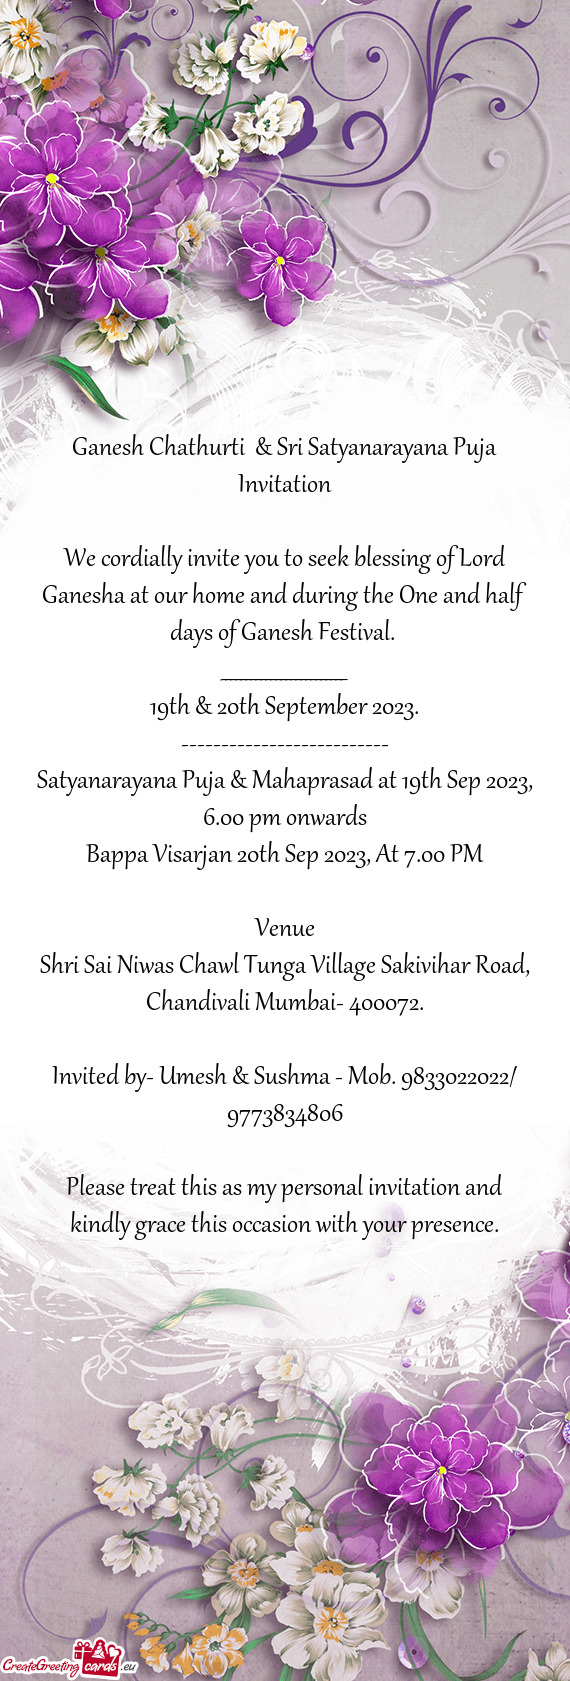 Ganesh Chathurti & Sri Satyanarayana Puja Invitation